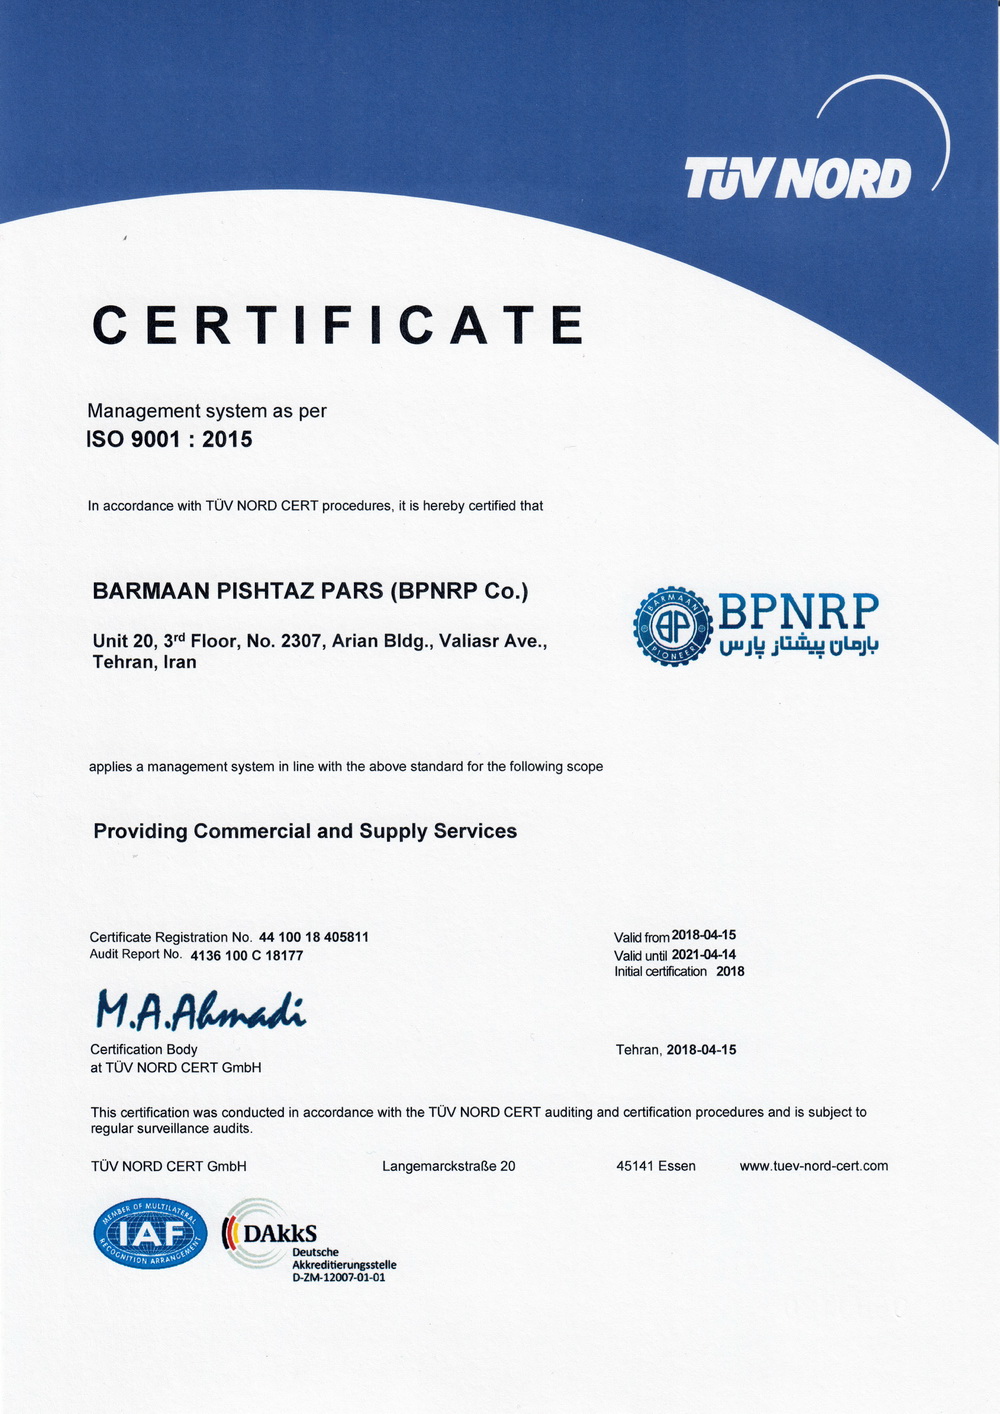 BPNRP ISO